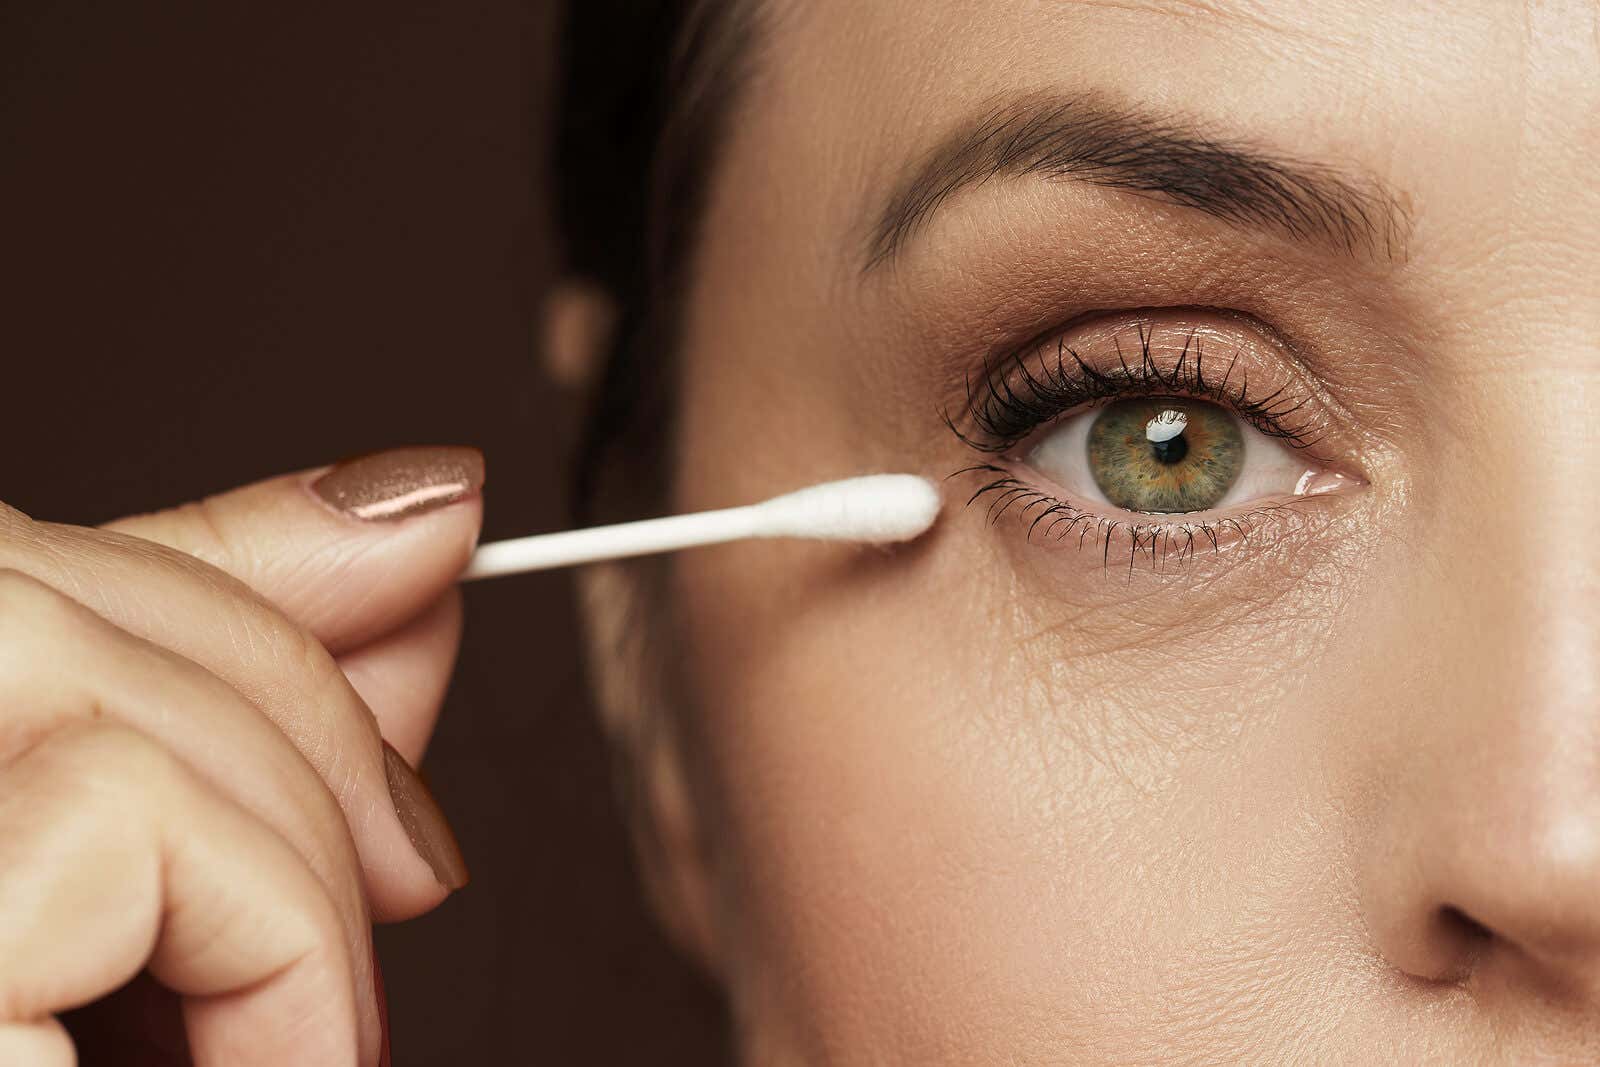 Vältä näitä virheitä roikkuvien silmäluomien meikkaamisessa.